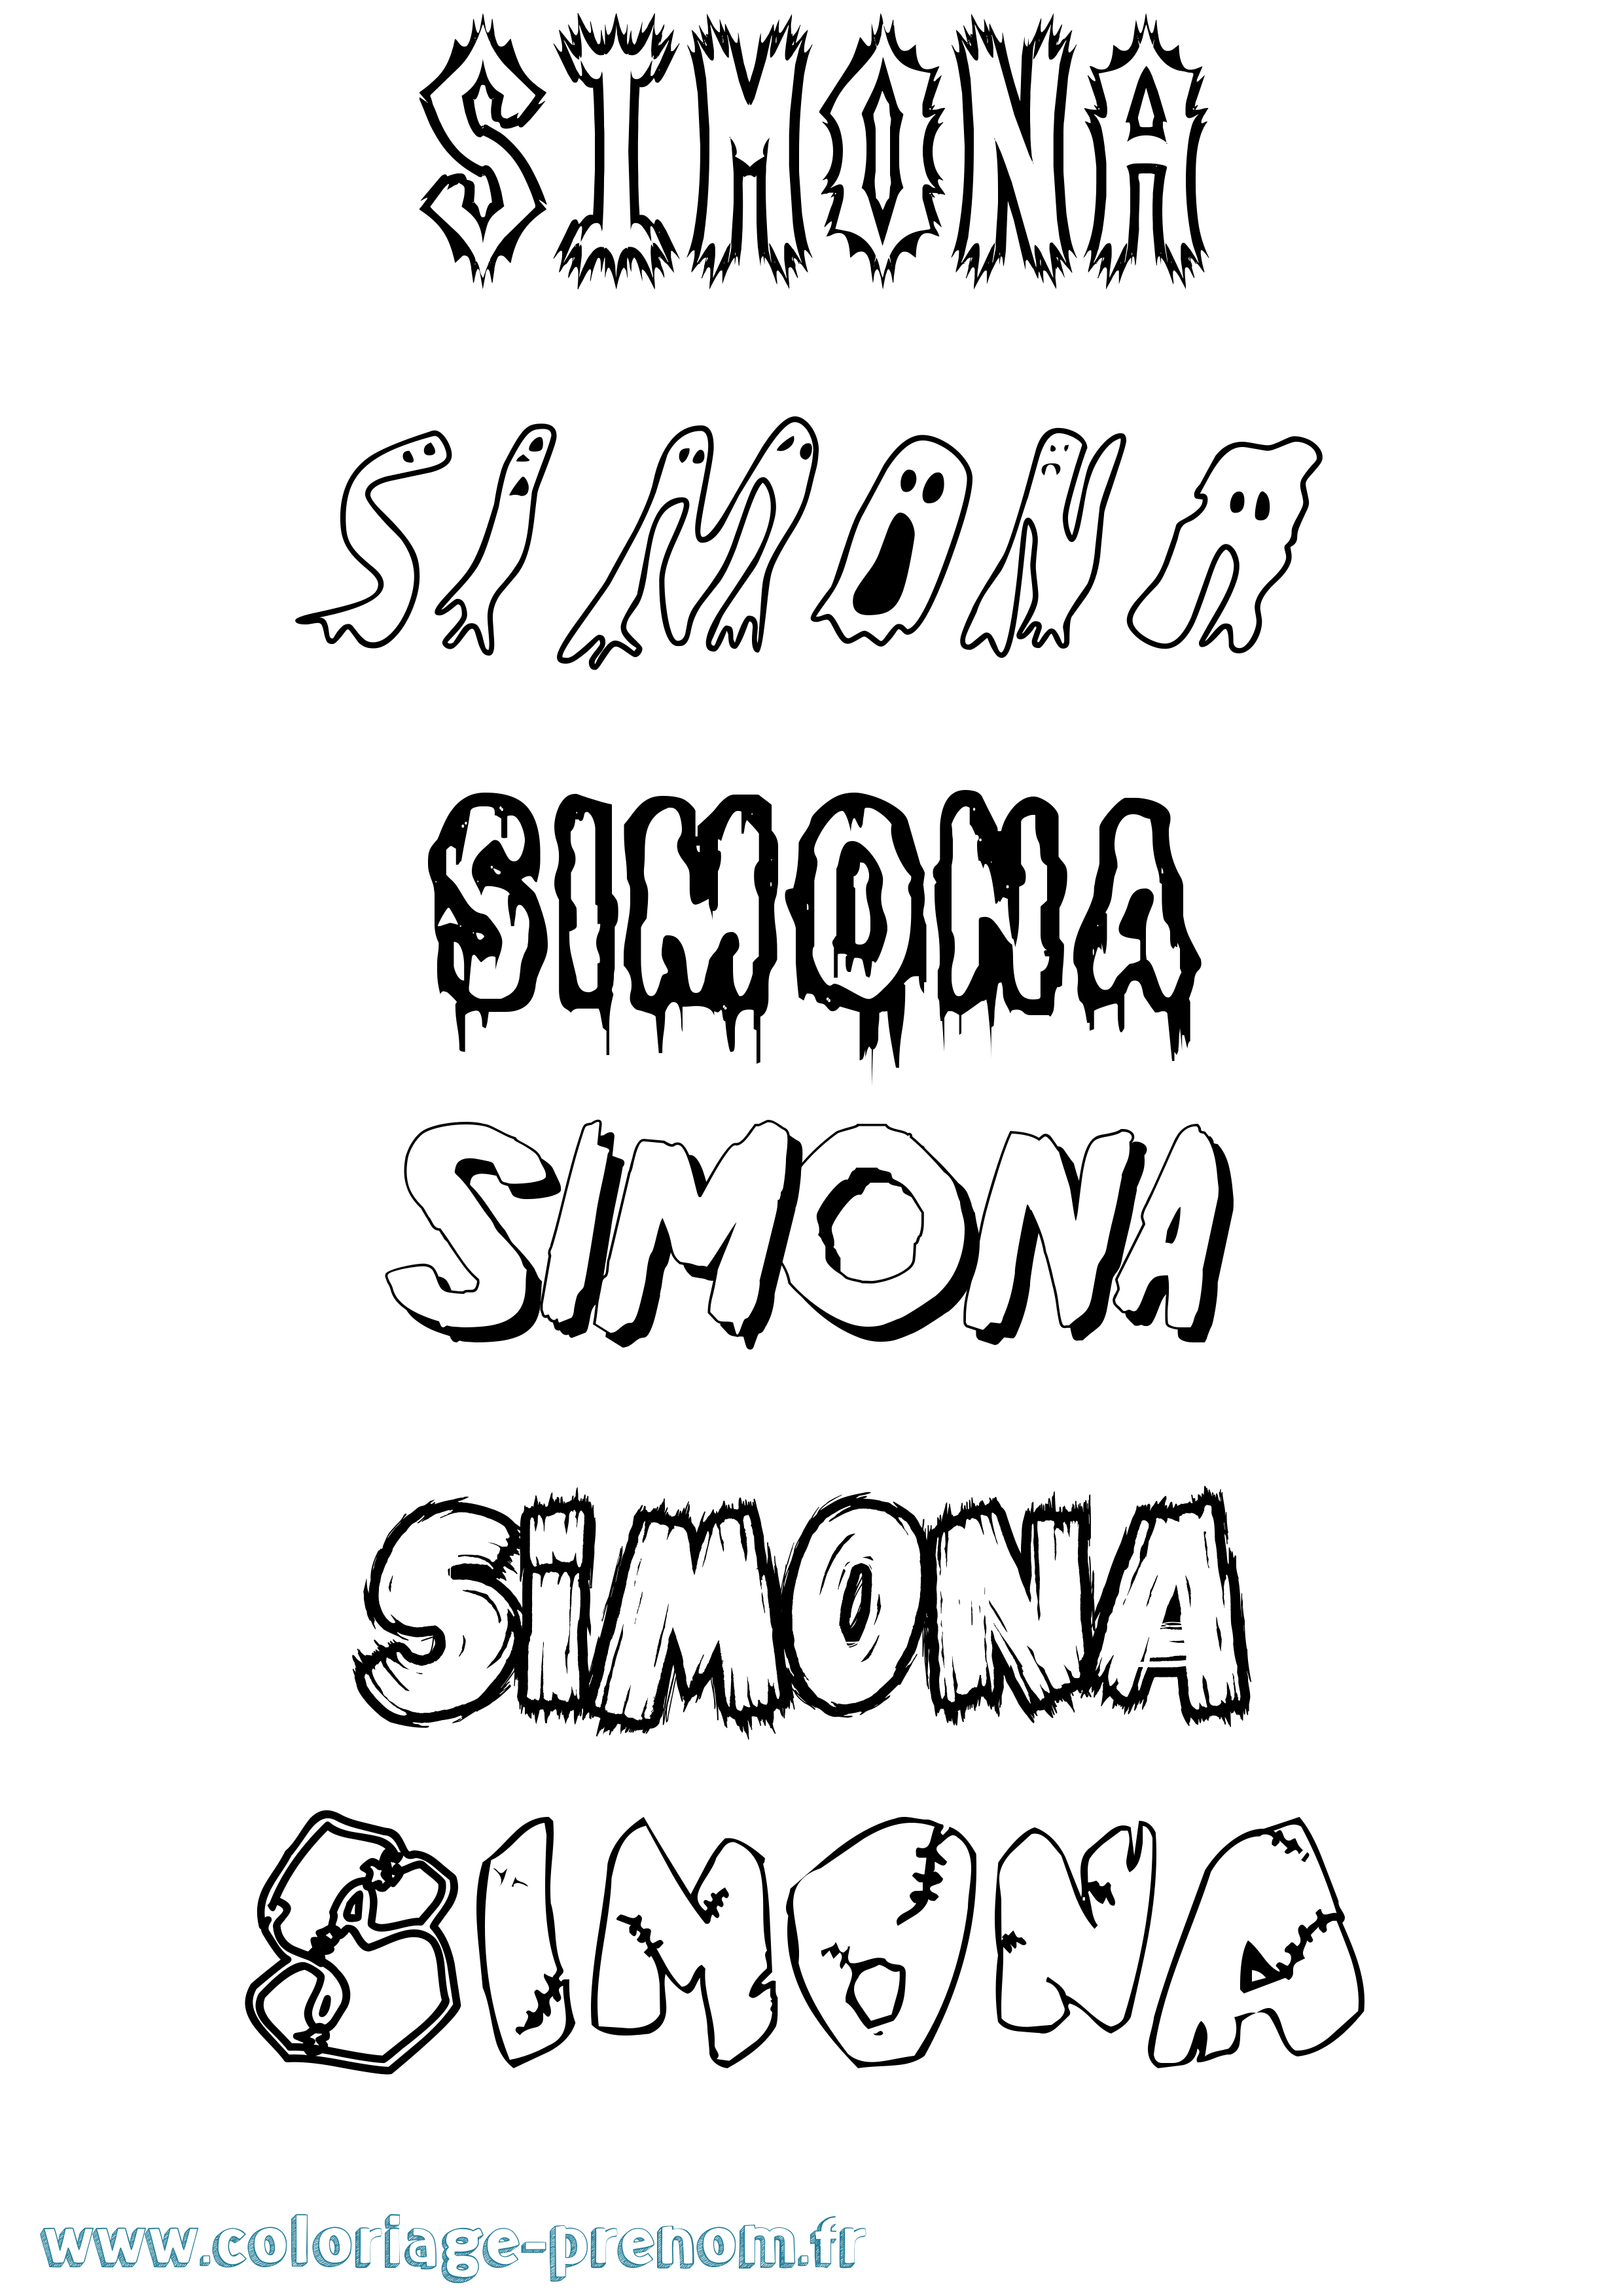 Coloriage prénom Simona Frisson